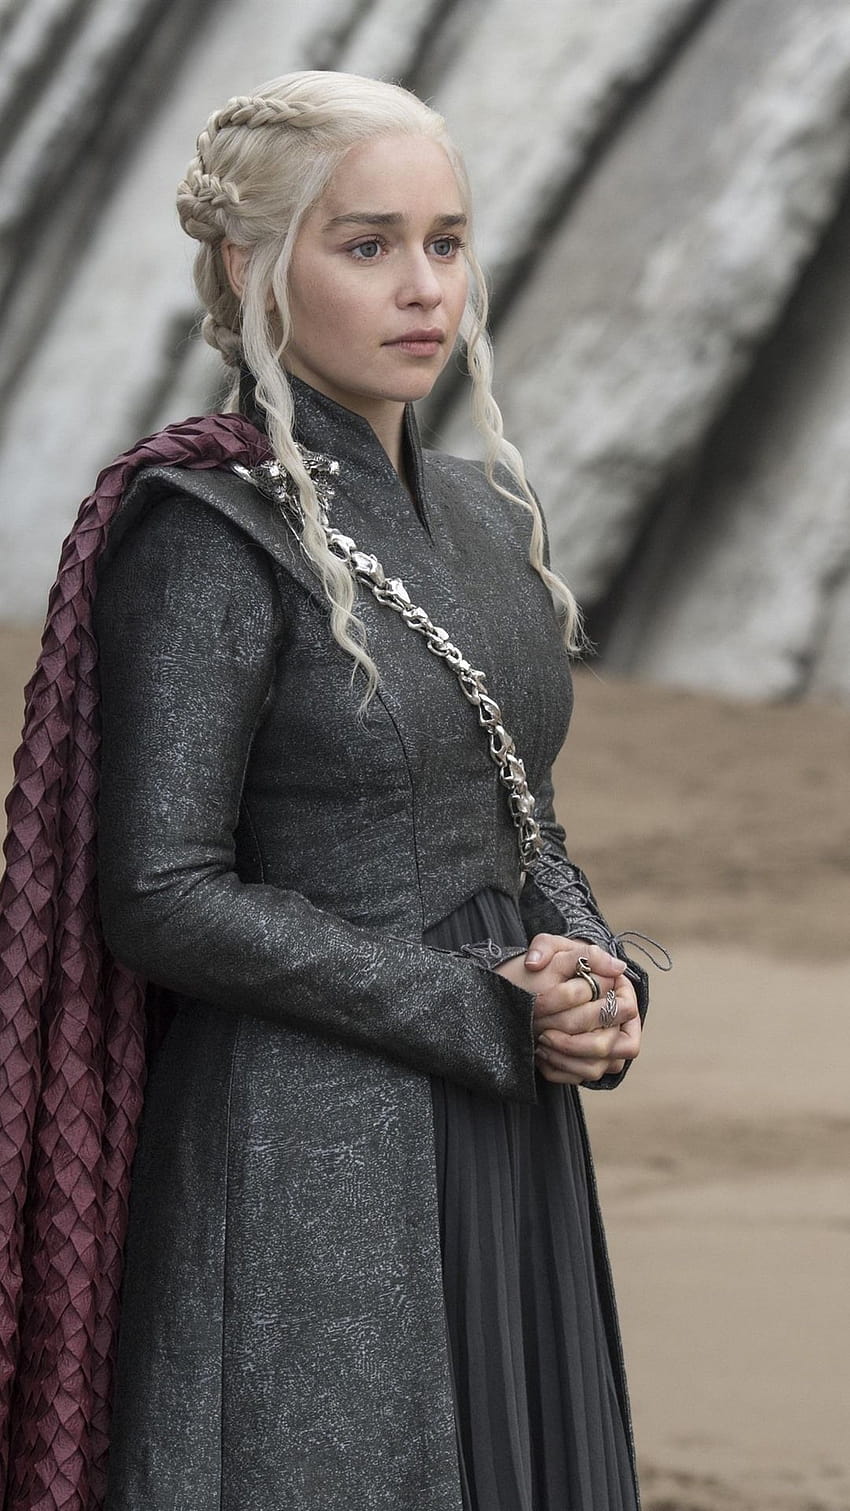 Juego de Tronos: Daenerys Targaryen, Televisión